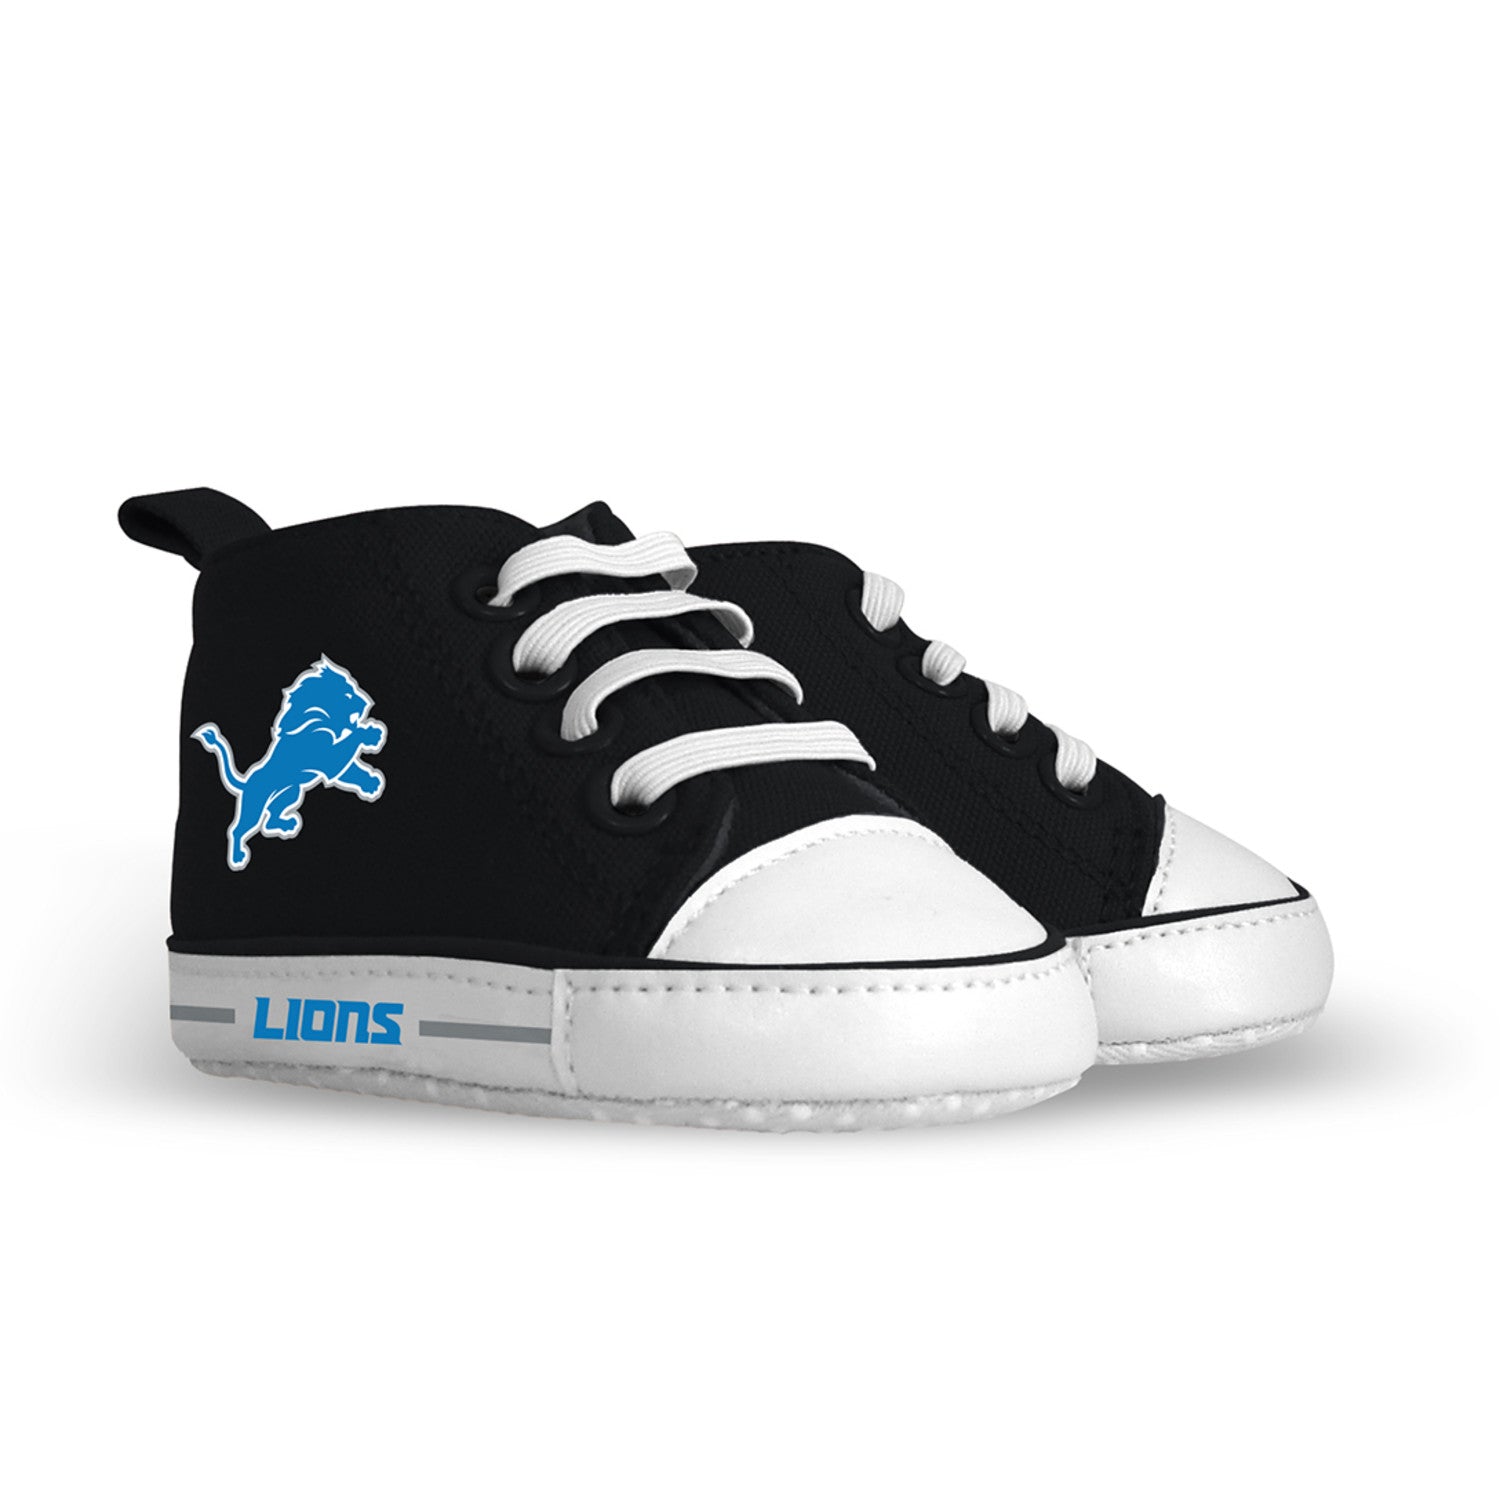 Detroit Lions Baby Shoes